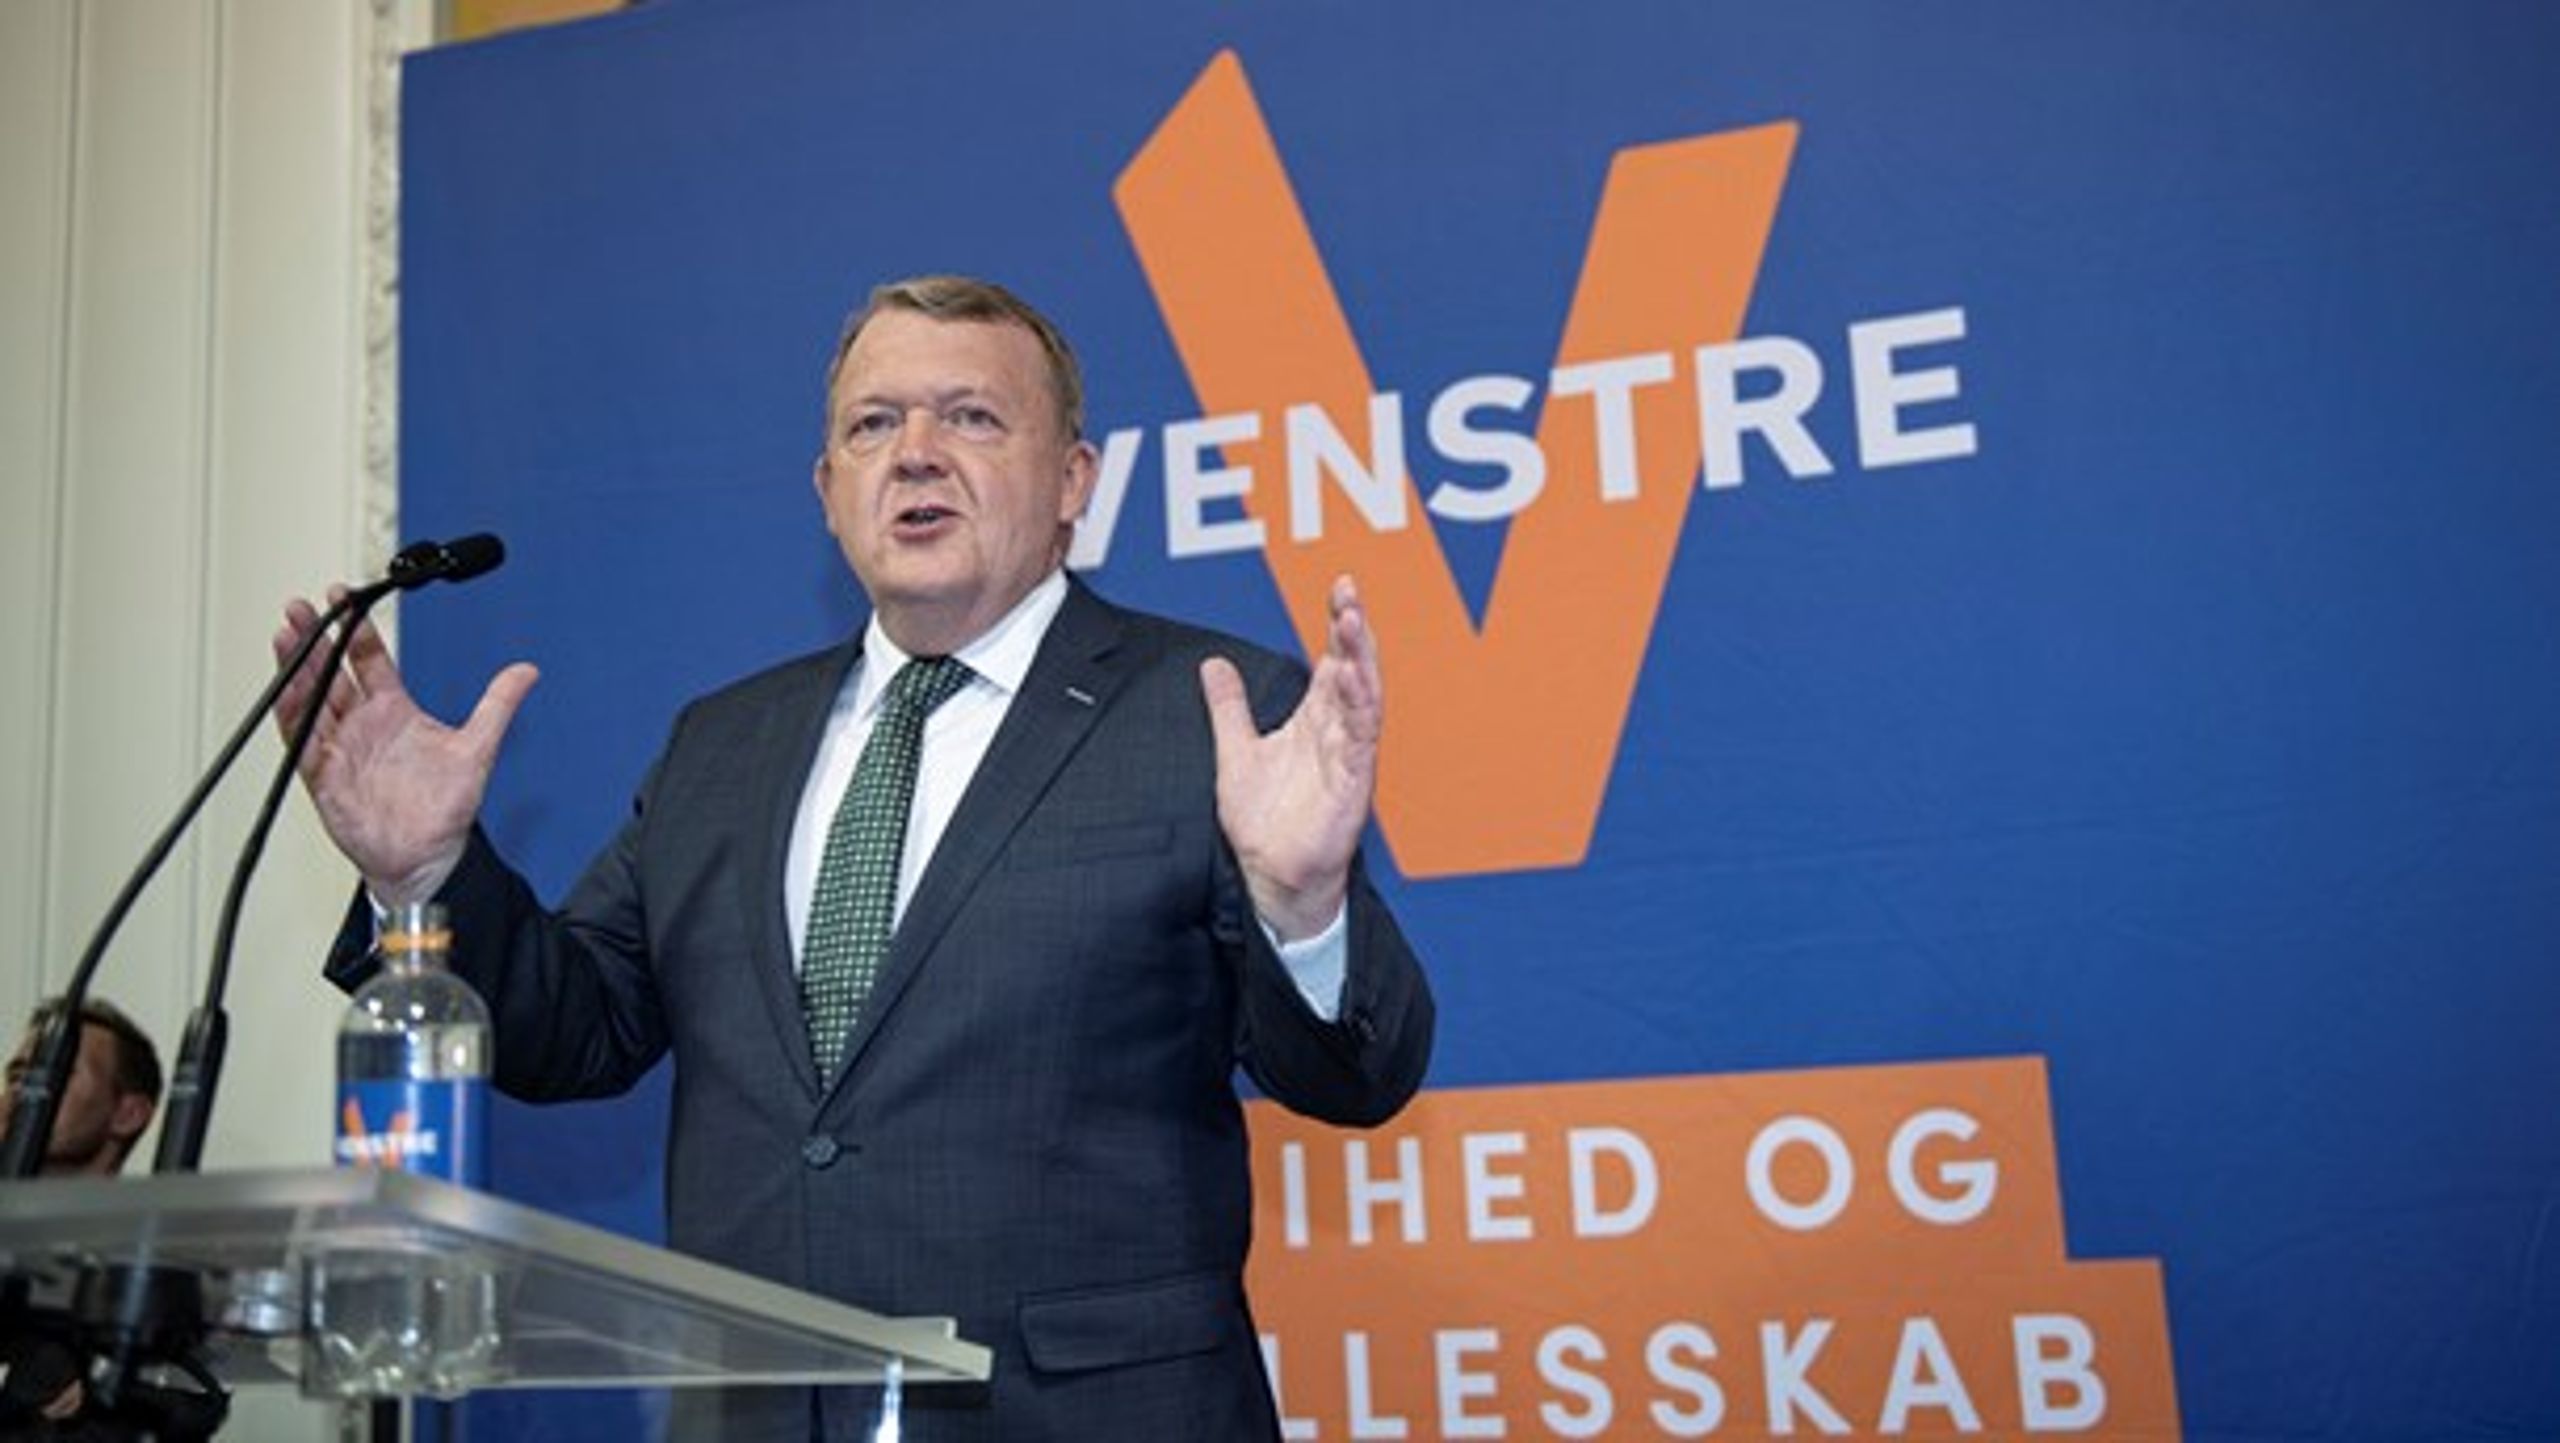 Lars Løkke Rasmussen og Venstre. Er han stadig medlem om en uge?